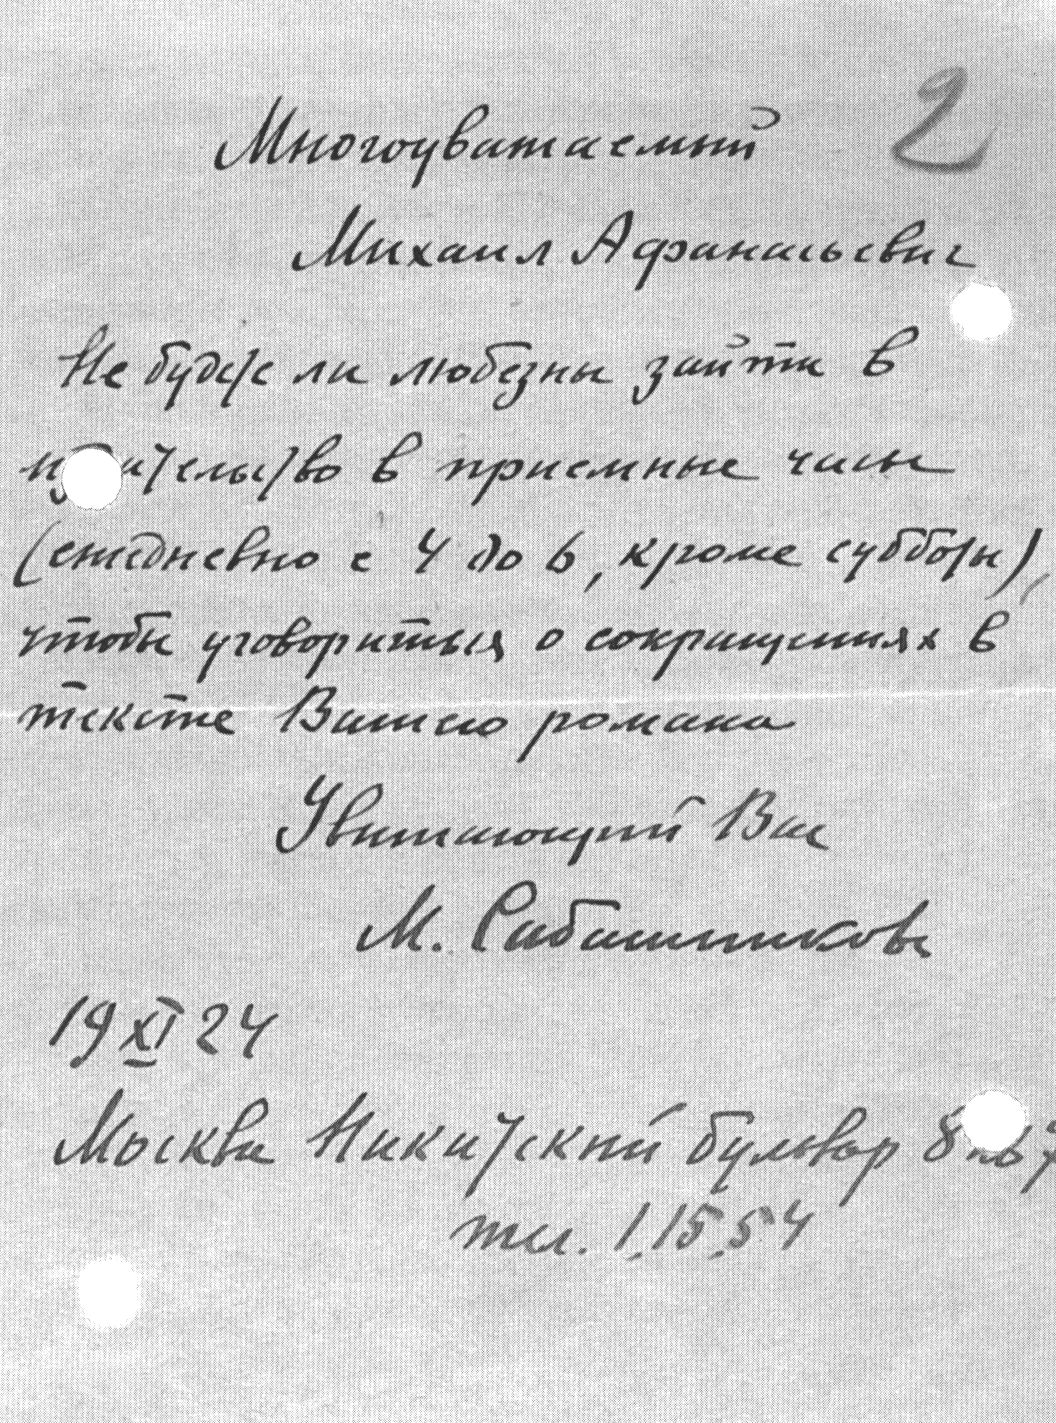 Письмо М.В. Сабашникова к М.А. Булгакову от 19 ноября 1924 года (автограф)